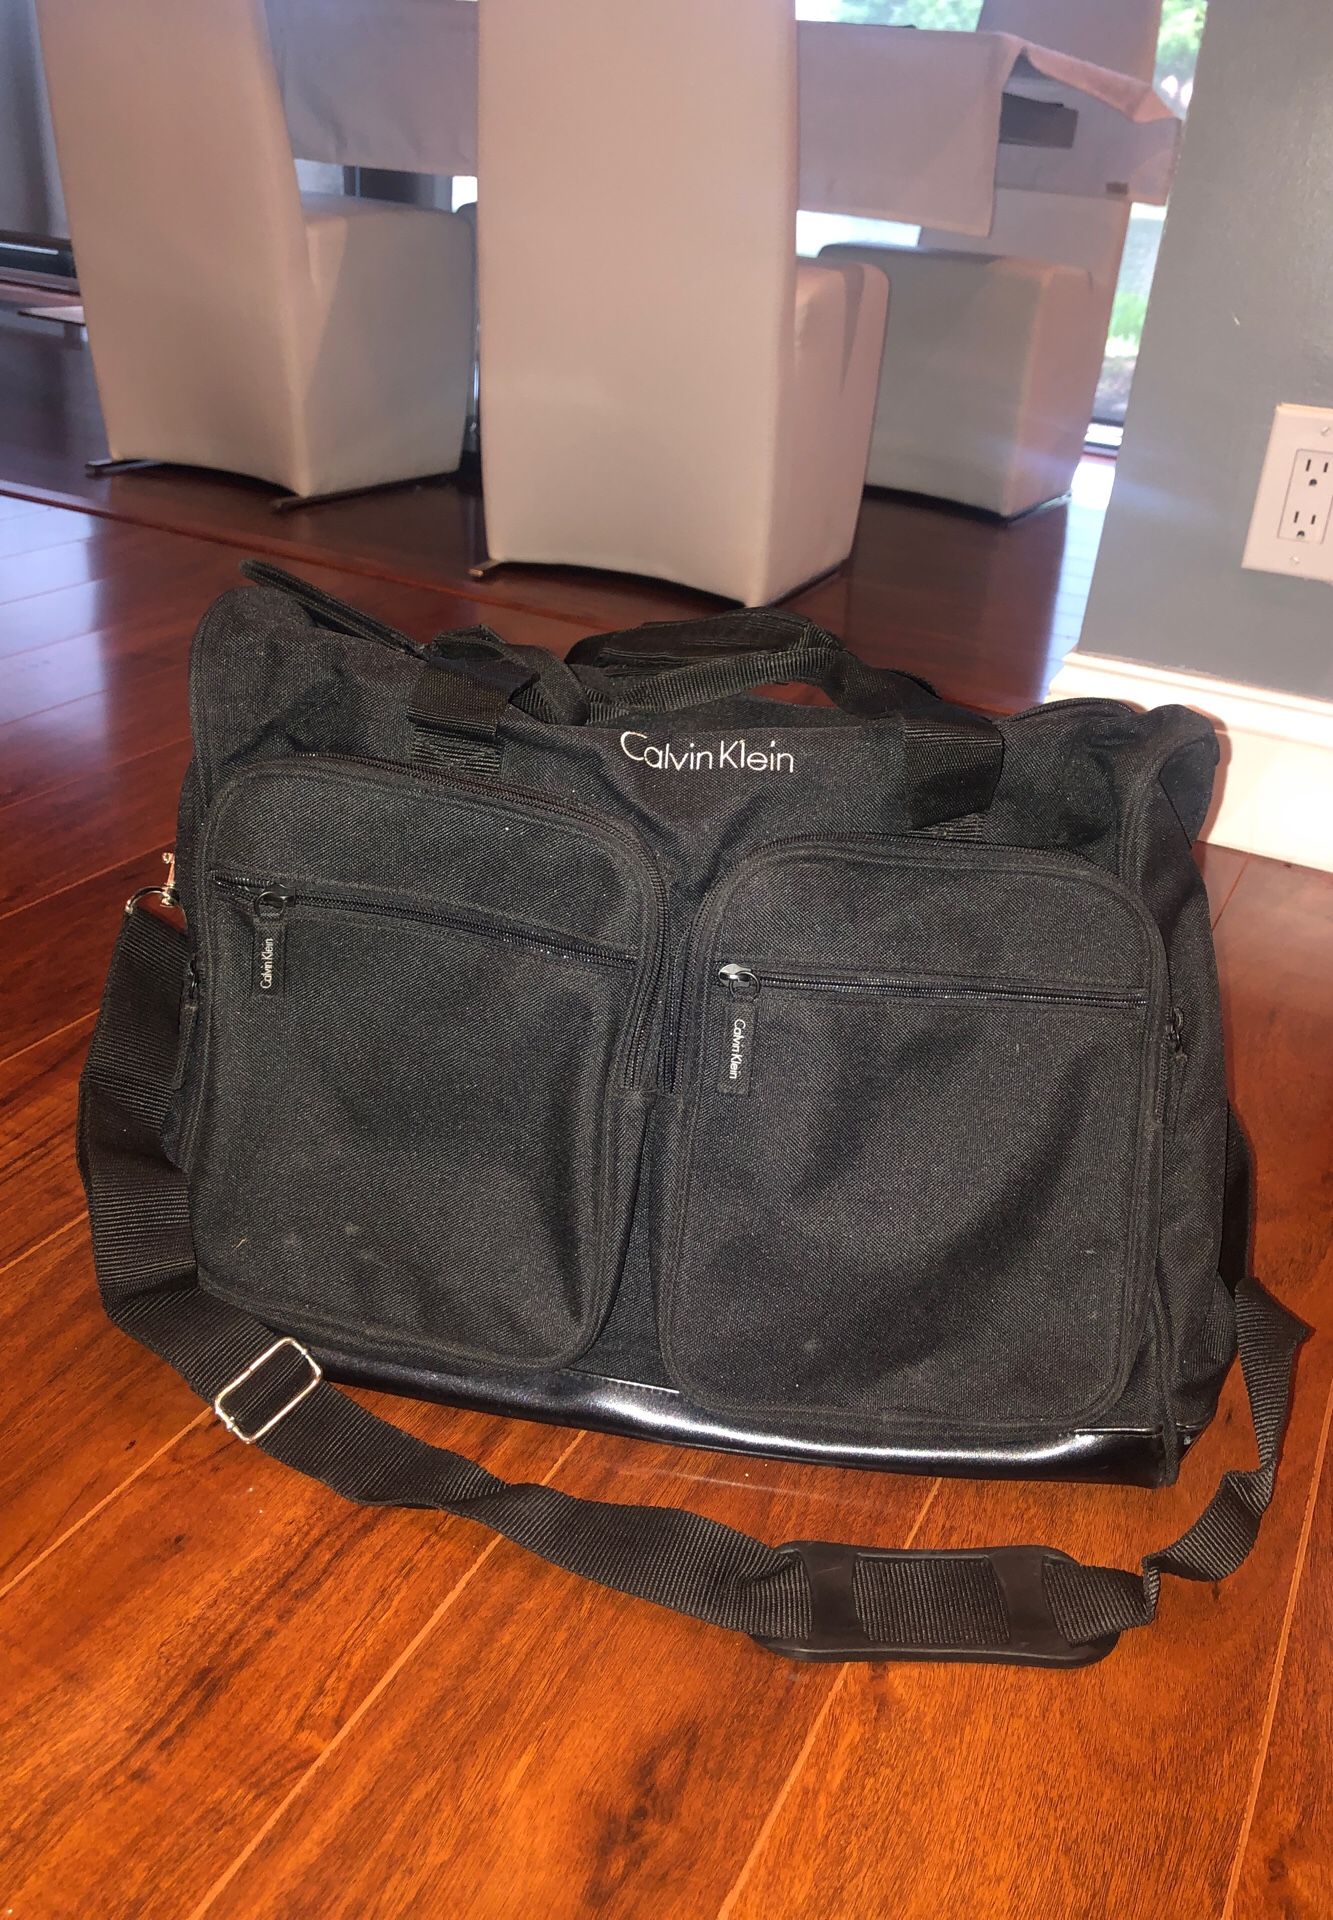 Calvin Klein Duffle bag